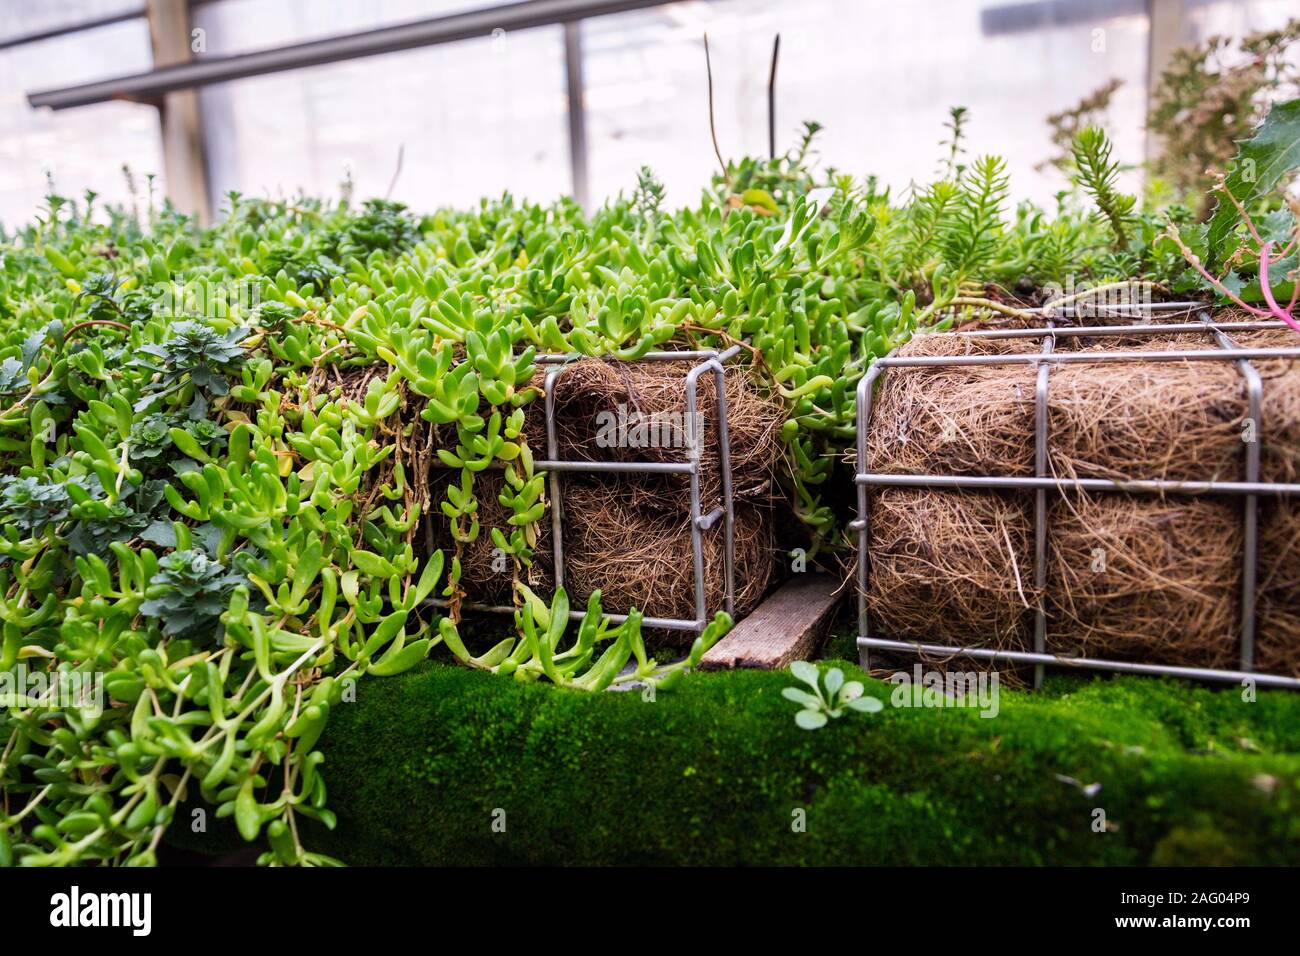 Piante verdi e l'erba cresce attraverso la maglia di filo di ferro zincato gabbione scatola riempita con il terreno utilizzato per vivere verde, la parete verticale esterna del giardino Foto Stock